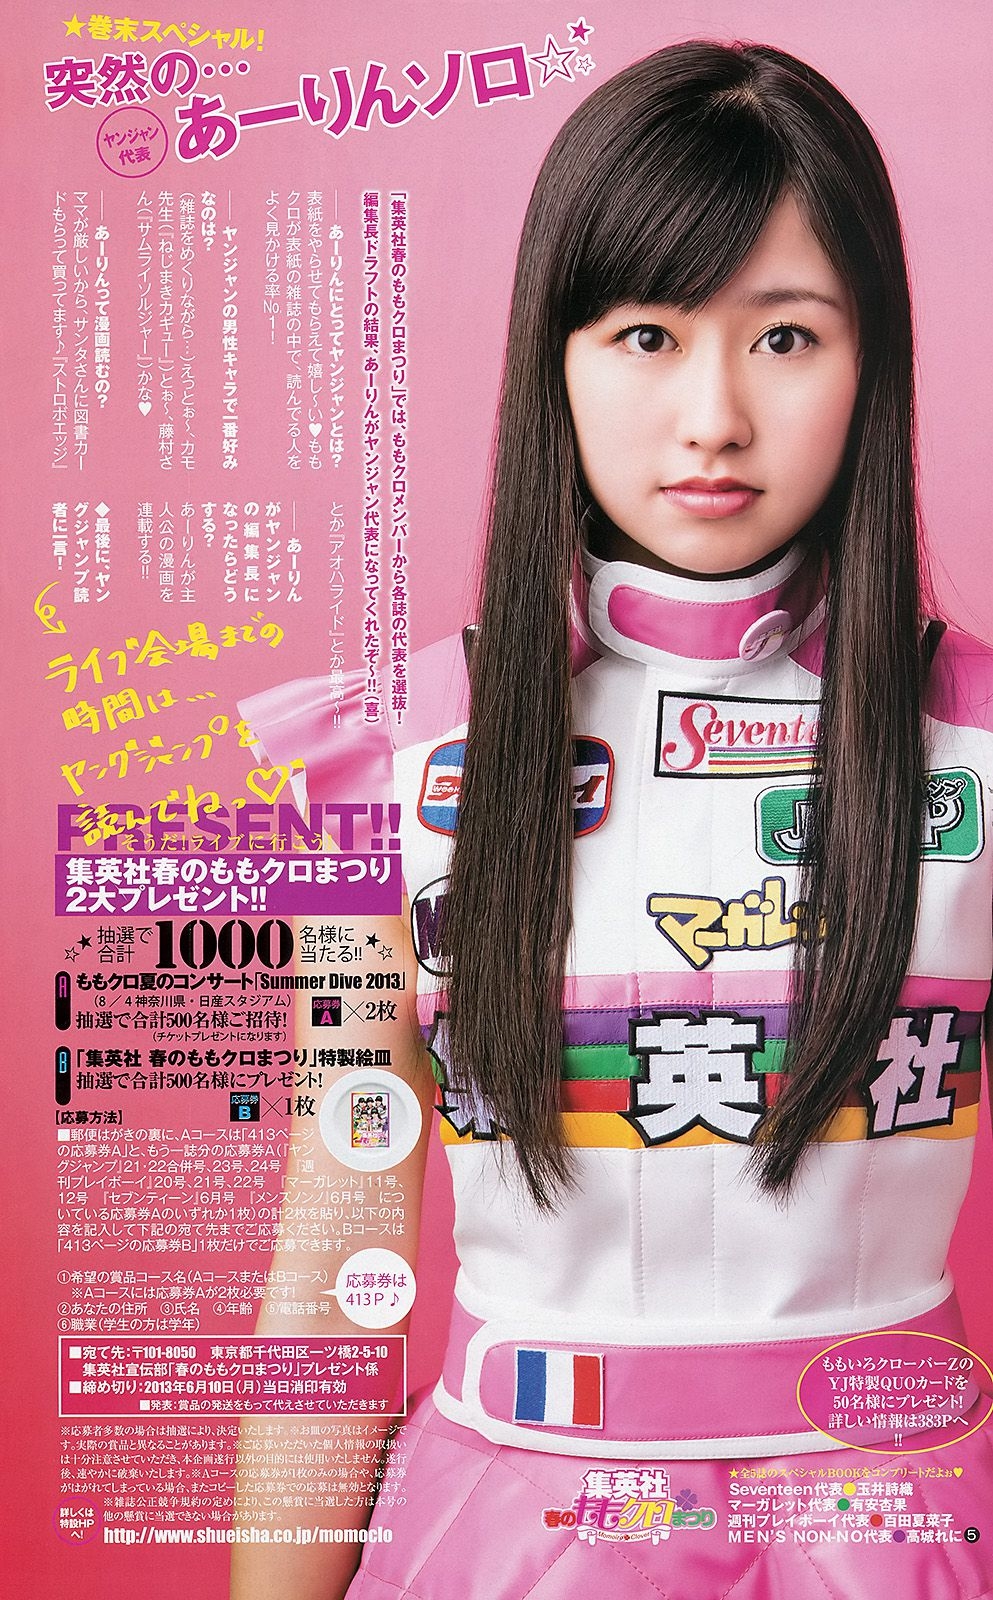 ももいろクローバーZ 相楽樹 たわコレ-たわわコレクション- [Weekly Young Jump] 2013年No.21-22 写真杂志 